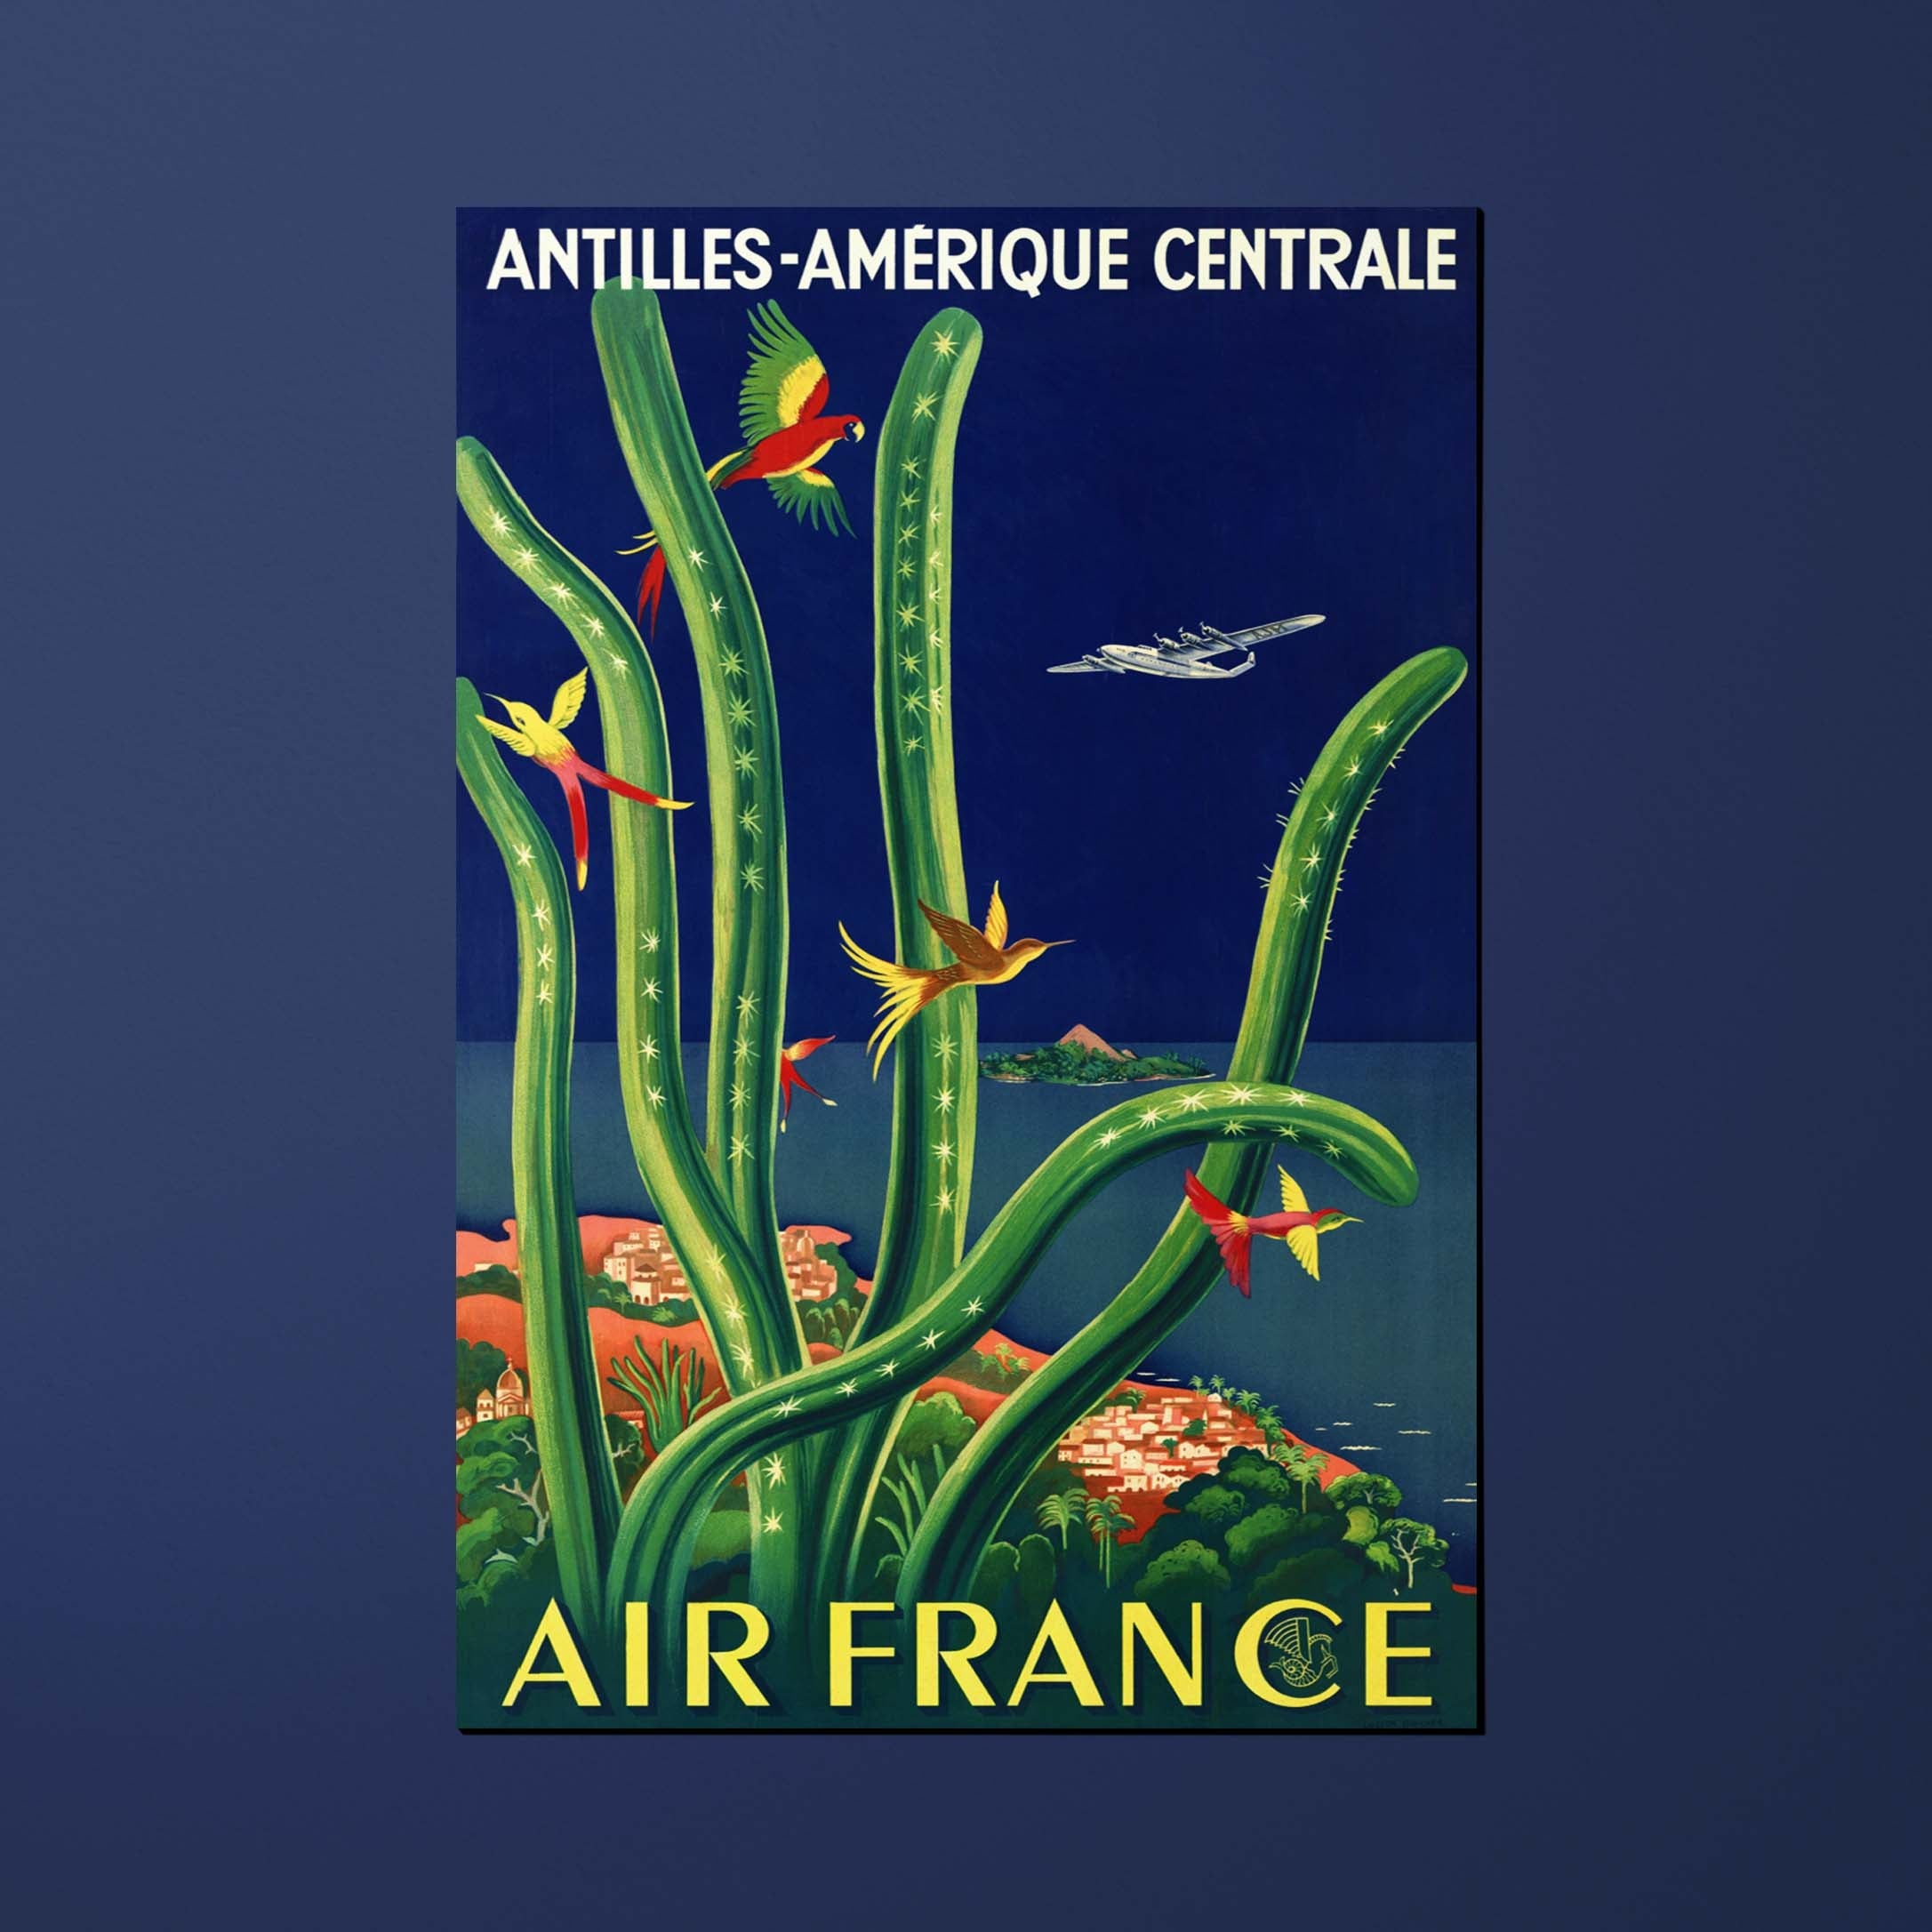 Carte postale Air France Legend Antilles - Amérique Centrale, cactus